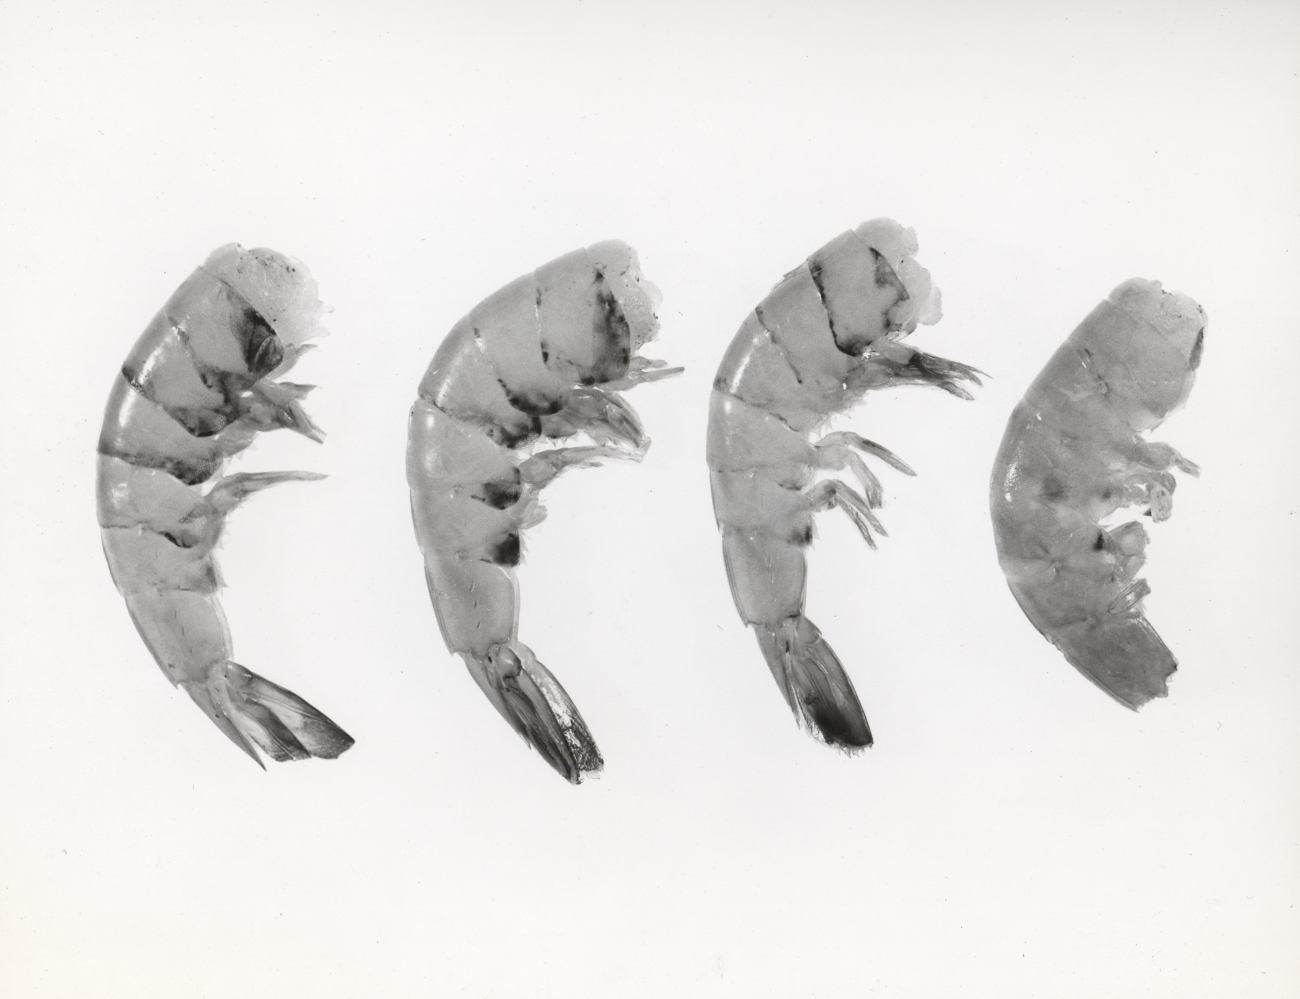 Black-spot disease in shrimp